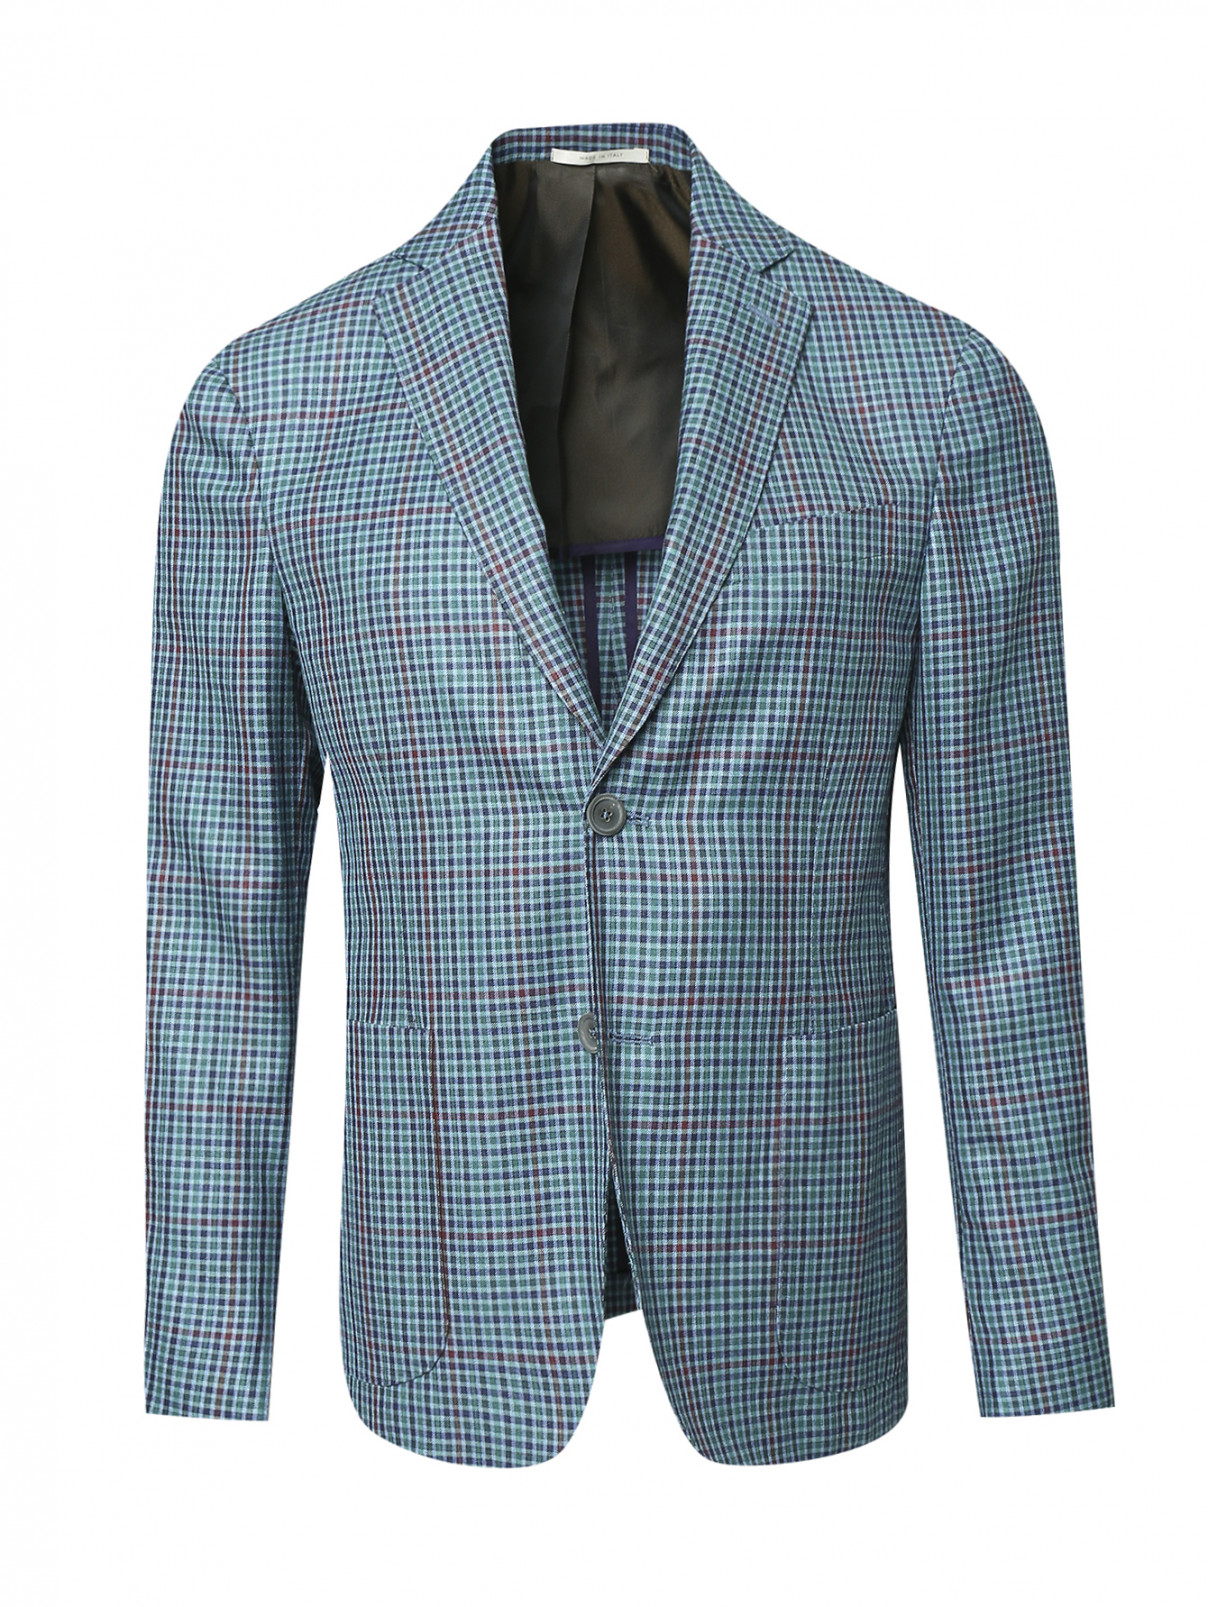 Пиджак однобортный из шерсти и шелка с узором "клетка" Pal Zileri  –  Общий вид  – Цвет:  Синий